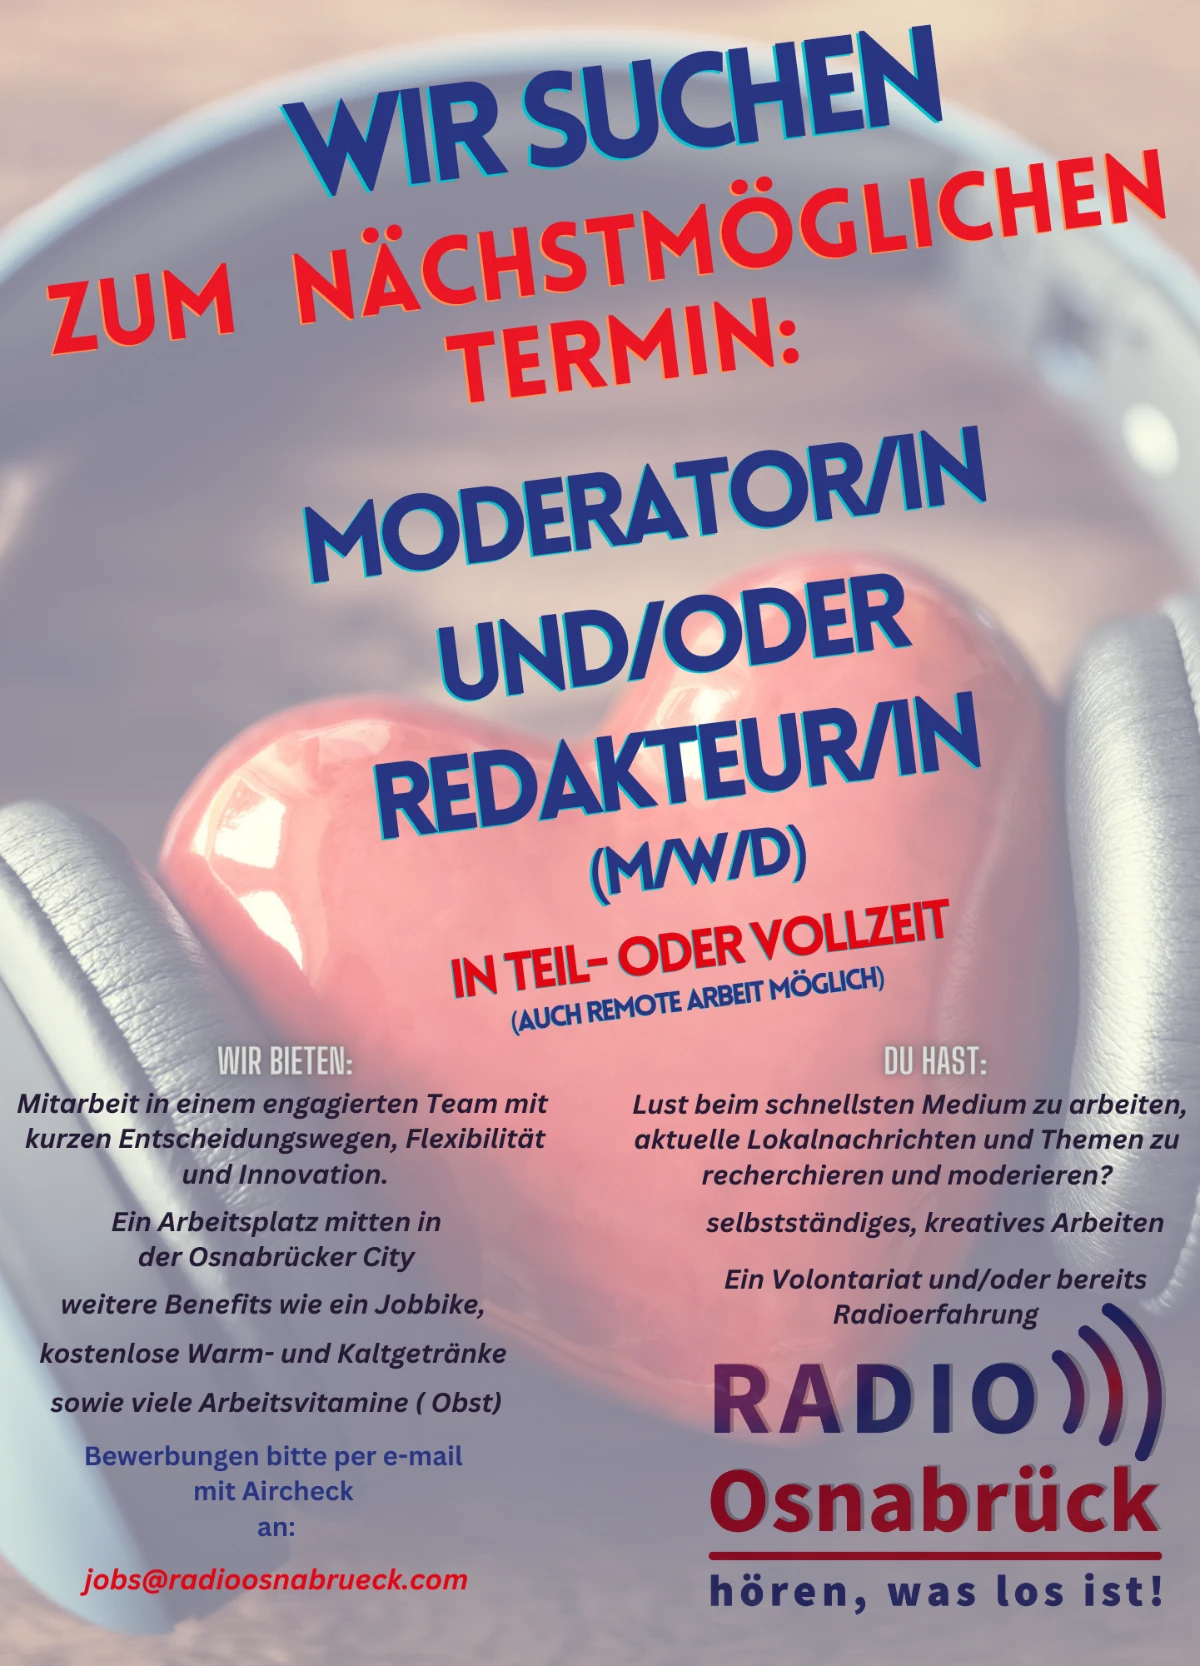 Radio Osnabrück sucht zum nächstmöglichen Termin eine/n Moderator/in und/oder Redakteur/in (m/w/d) in Teil- oder Vollzeit (auch Remote-Arbeit möglich).